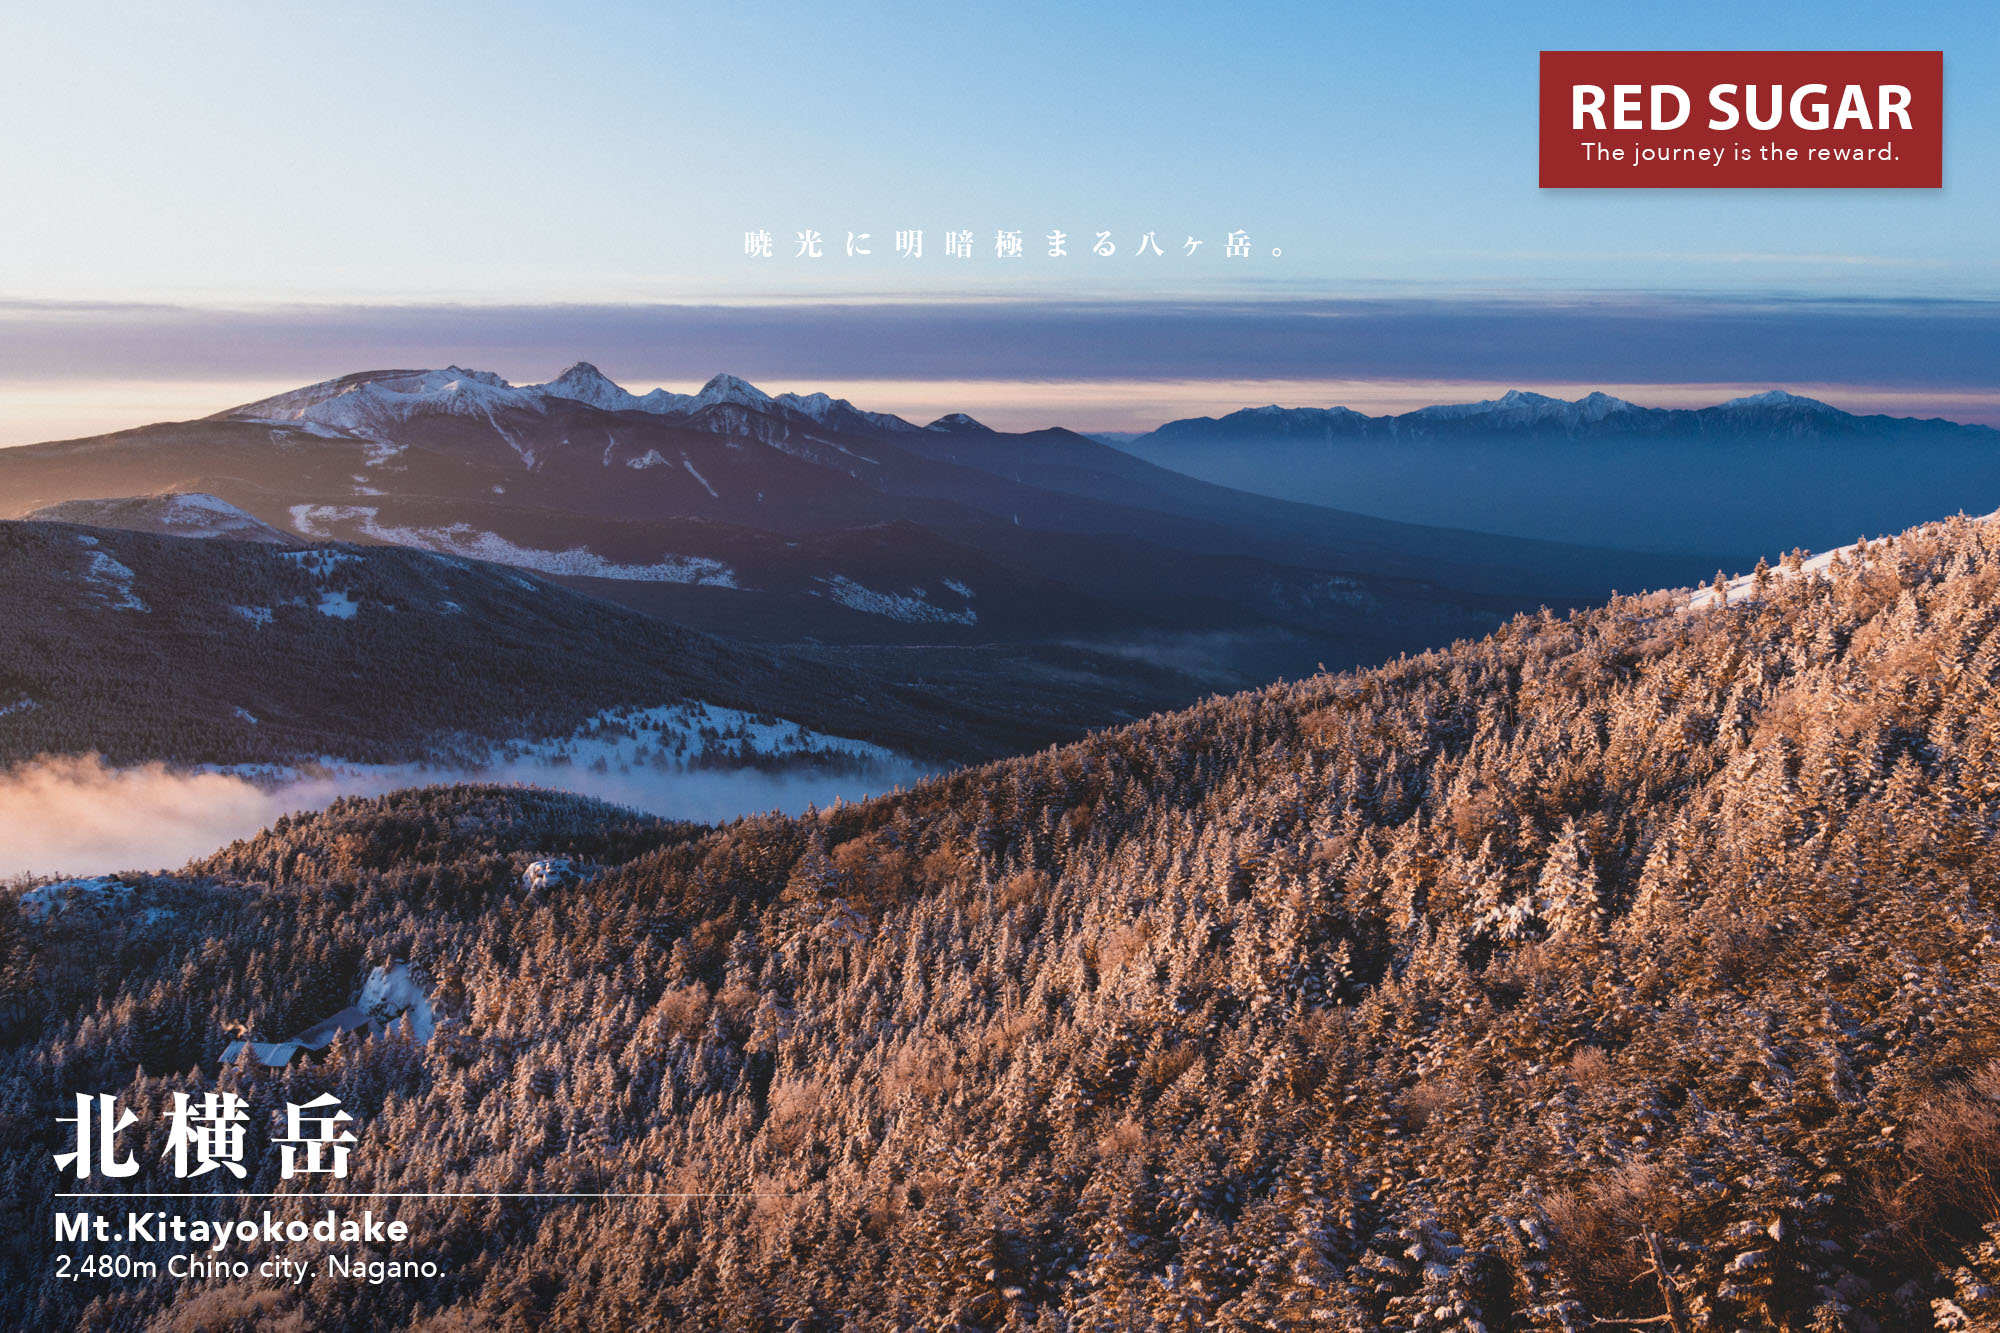 八ヶ岳 北横岳 朝焼けの八ヶ岳を写す深夜登山の旅 Red Sugar